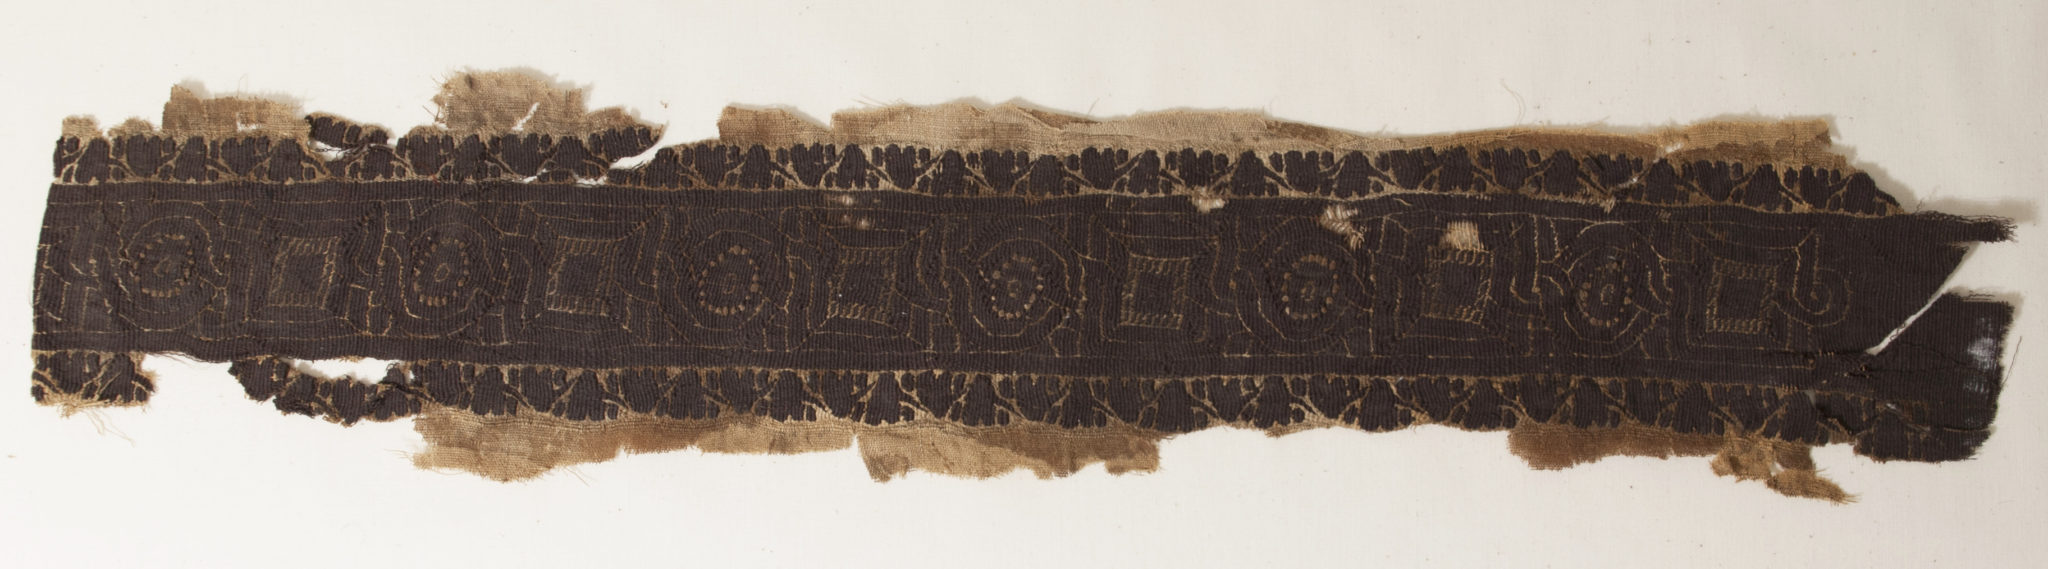 Ancient Textile